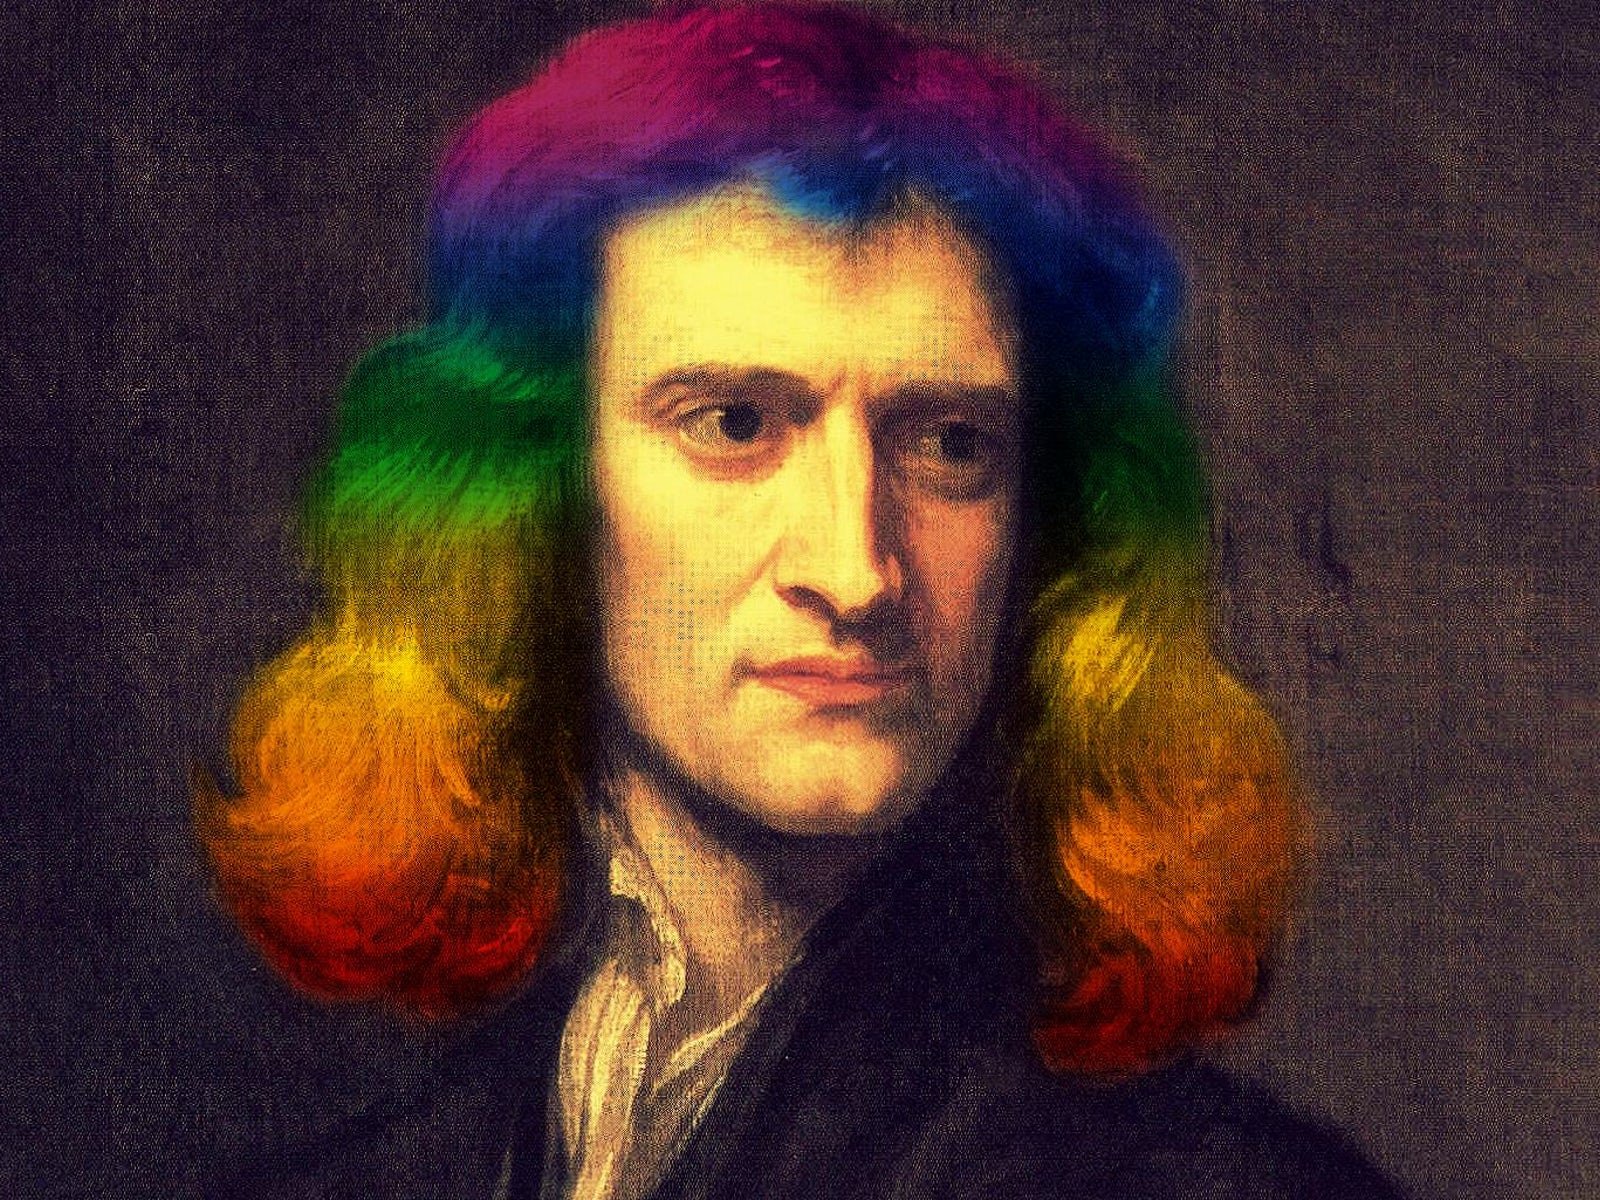 Цвет включенный ньютоном в радугу 6 букв. Ньютон портрет.